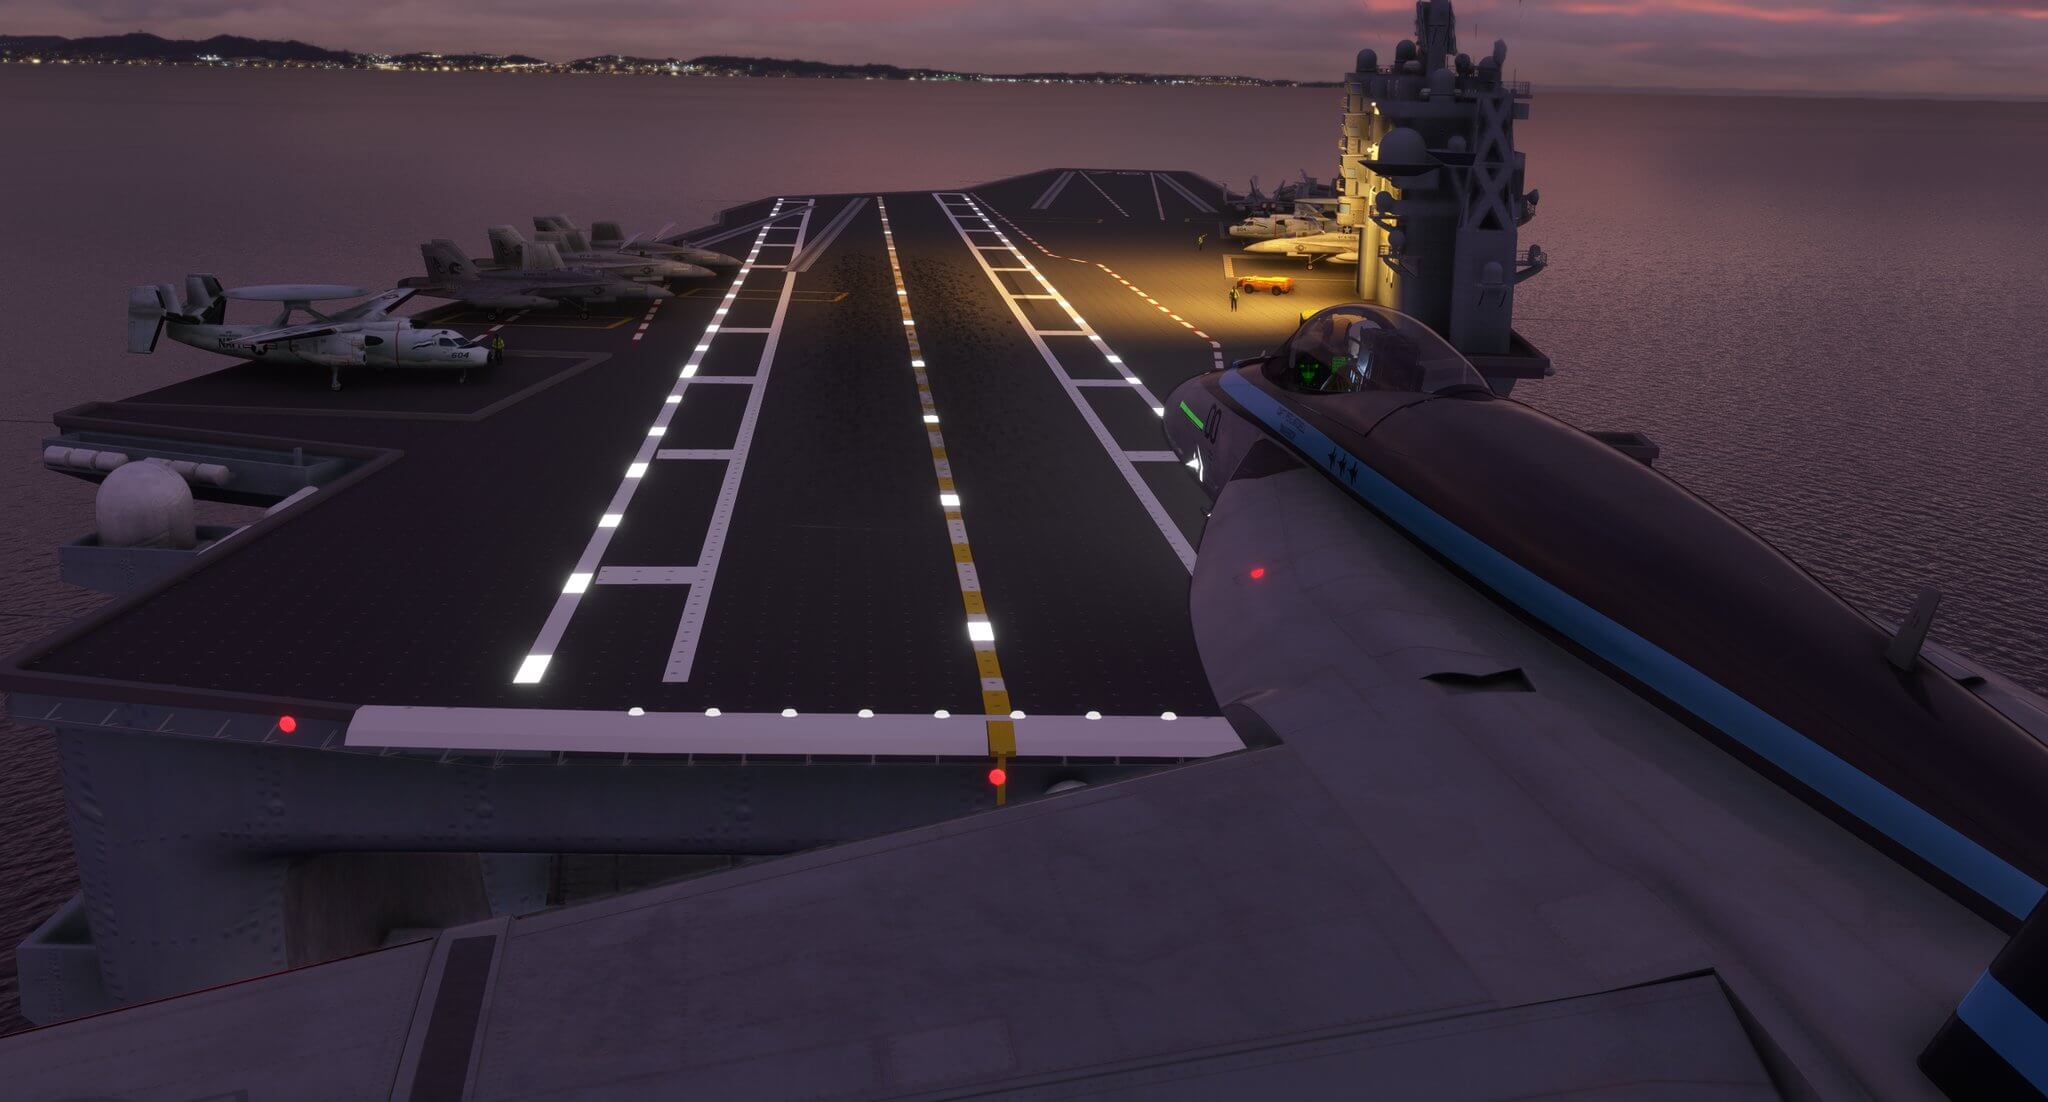 The Top Gun Maverick F/A-18 Hornet landing on an aircraft carrier